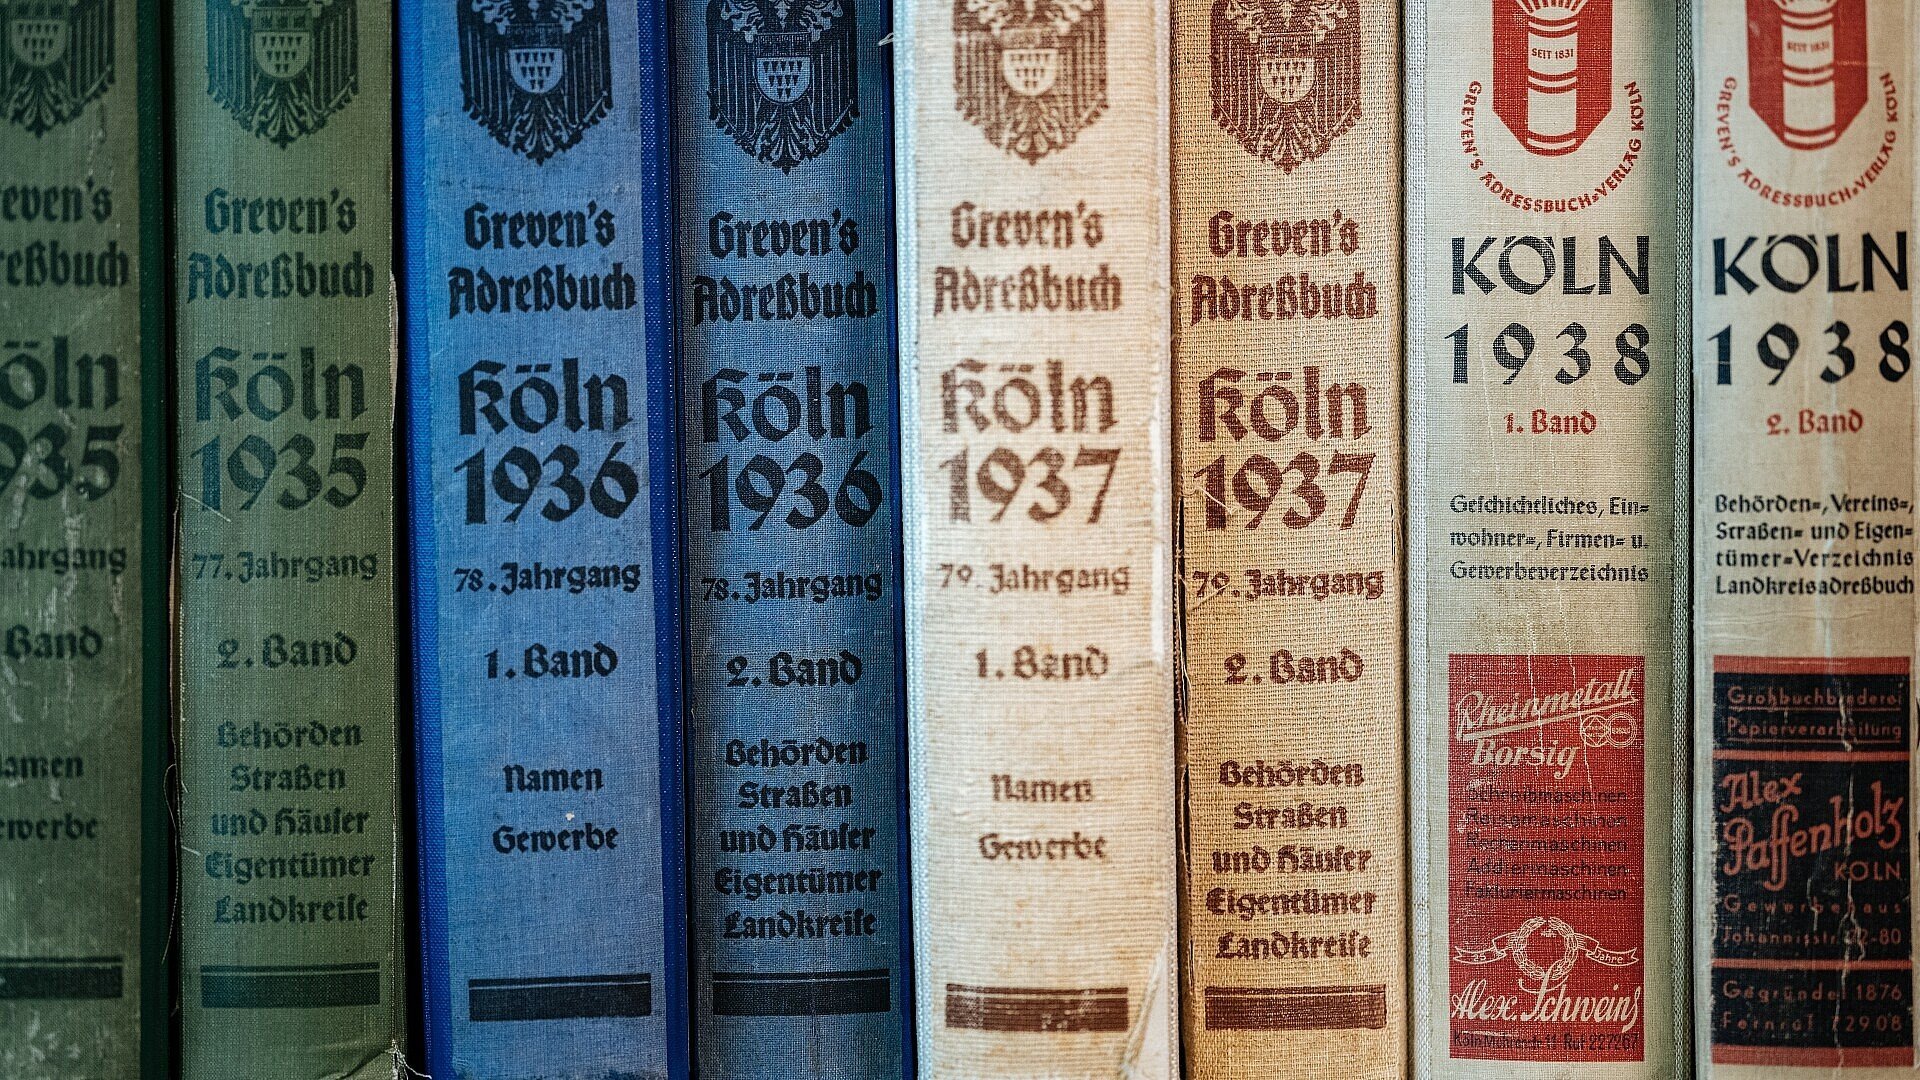 Kölner Adressbücher aus den 1930er Jahren